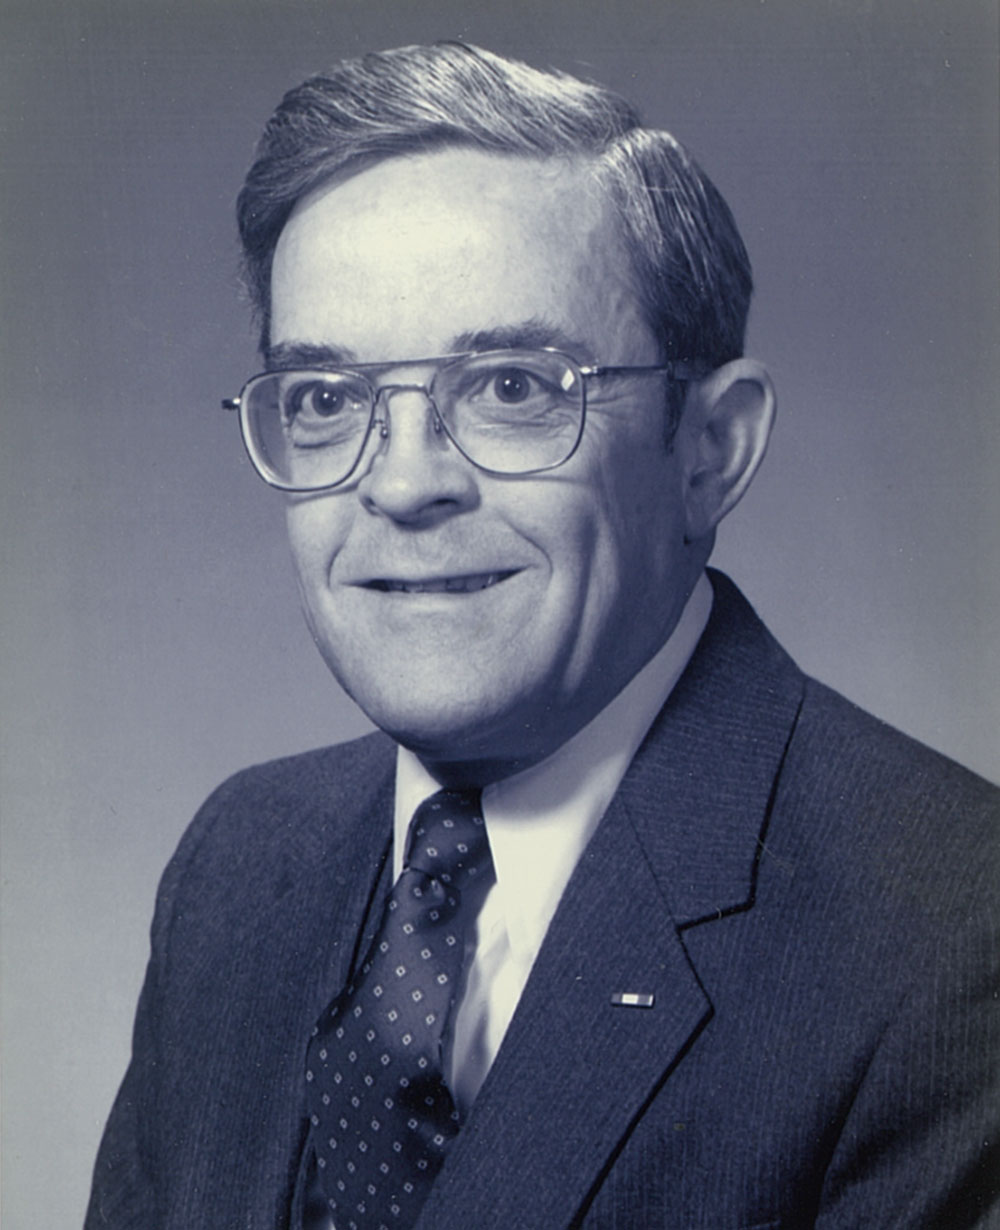 H.J. (Jerry) Dalton, PRSA President of 1990